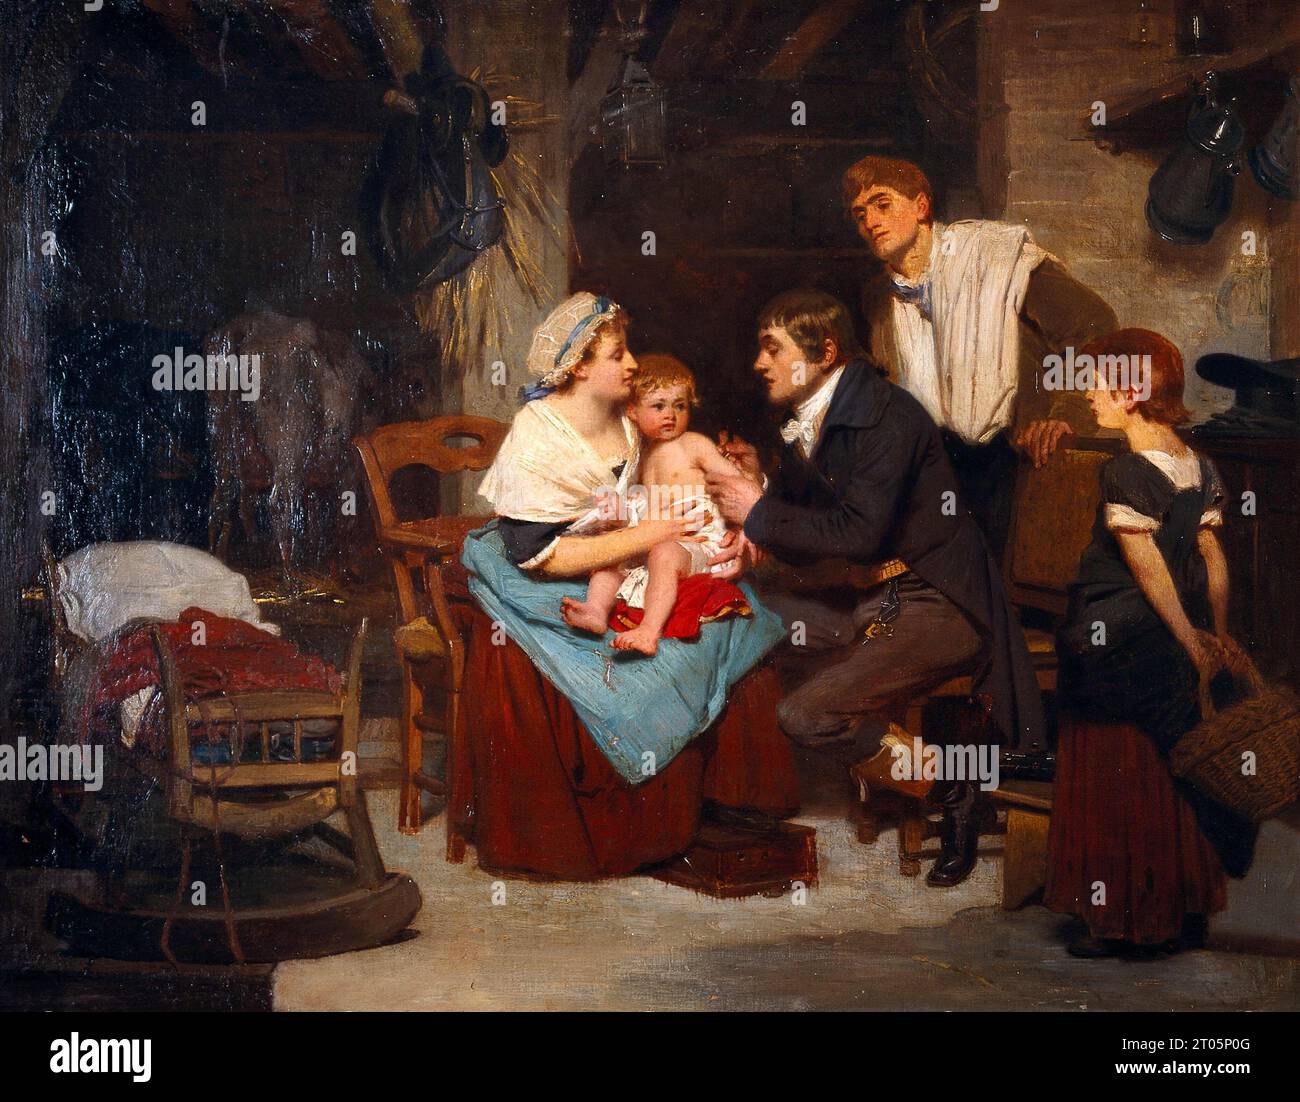 Edward Jenner, der 1749–1823 einen Jungen impfte, war ein englischer Arzt und Wissenschaftler, der Pionierarbeit beim Konzept von Impfstoffen leistete und den weltweit ersten Impfstoff gegen Pocken schuf. Ölgemälde des französischen Künstlers Eugène-Ernest Hillemacher, 1884 Stockfoto